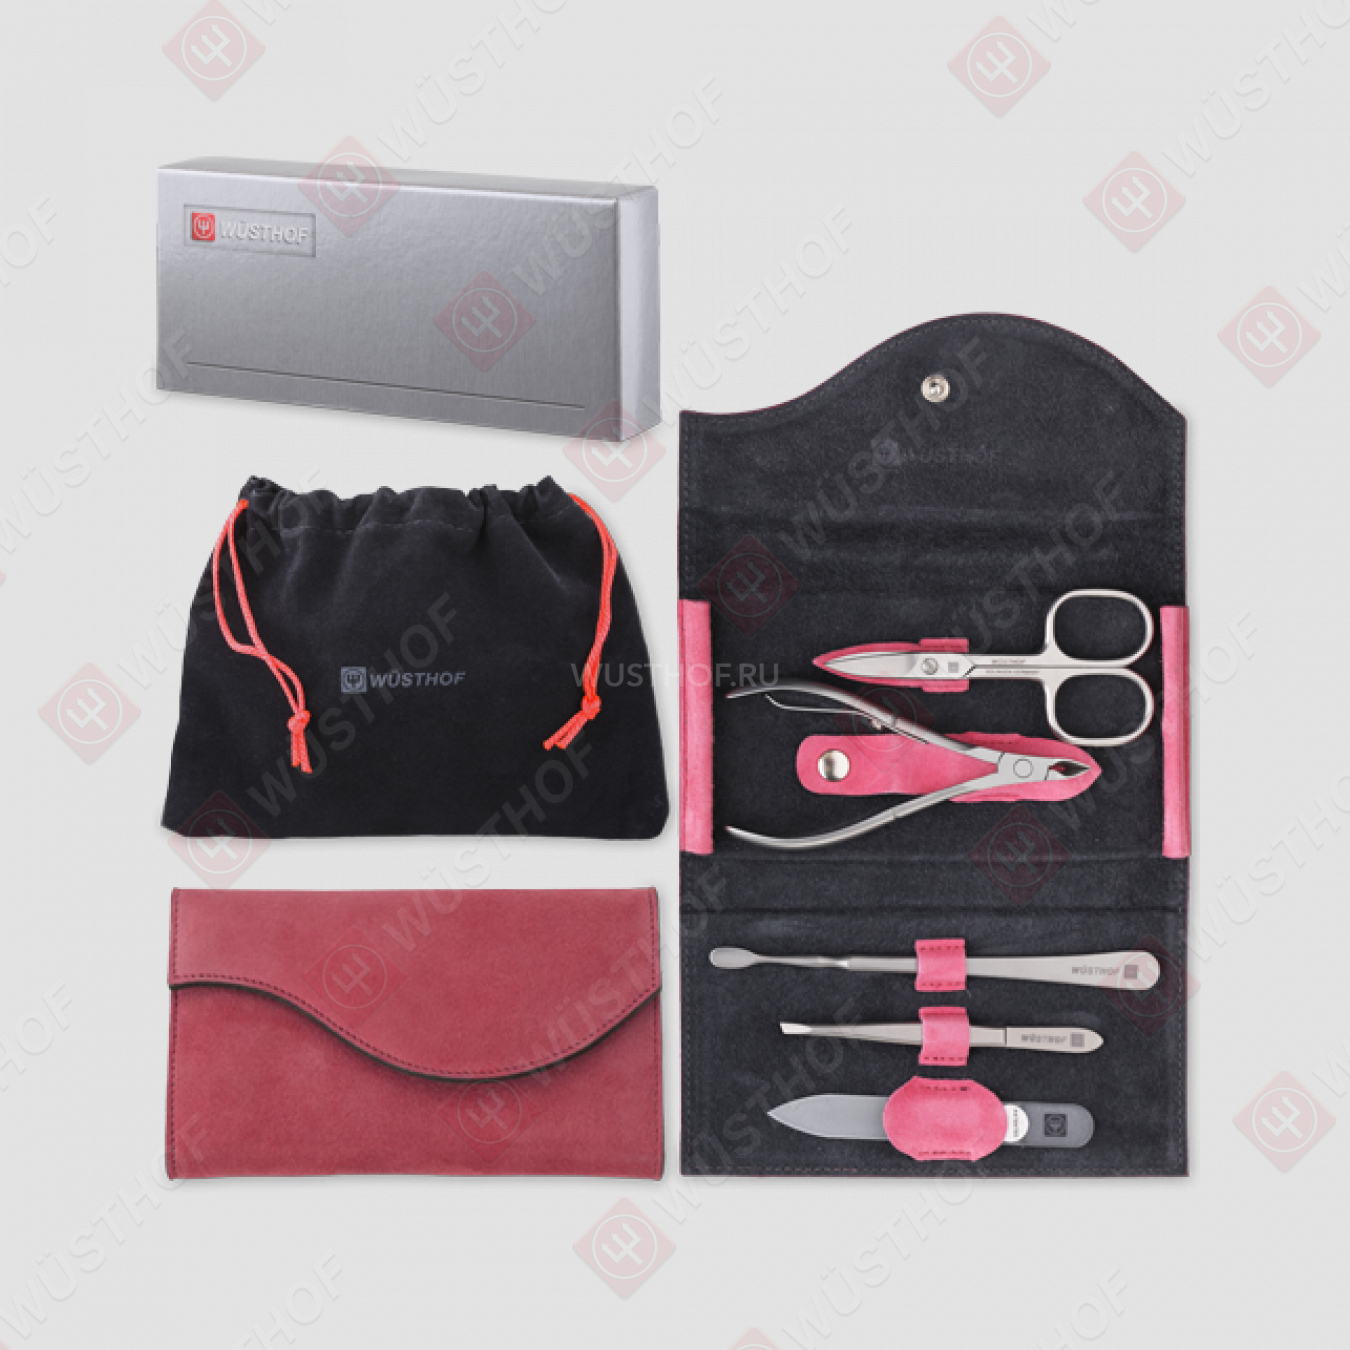 Набор маникюрный 5 предметов в кожаном футляре, цвет розовый, сатин, серия Manicure sets, WUESTHOF, Германия